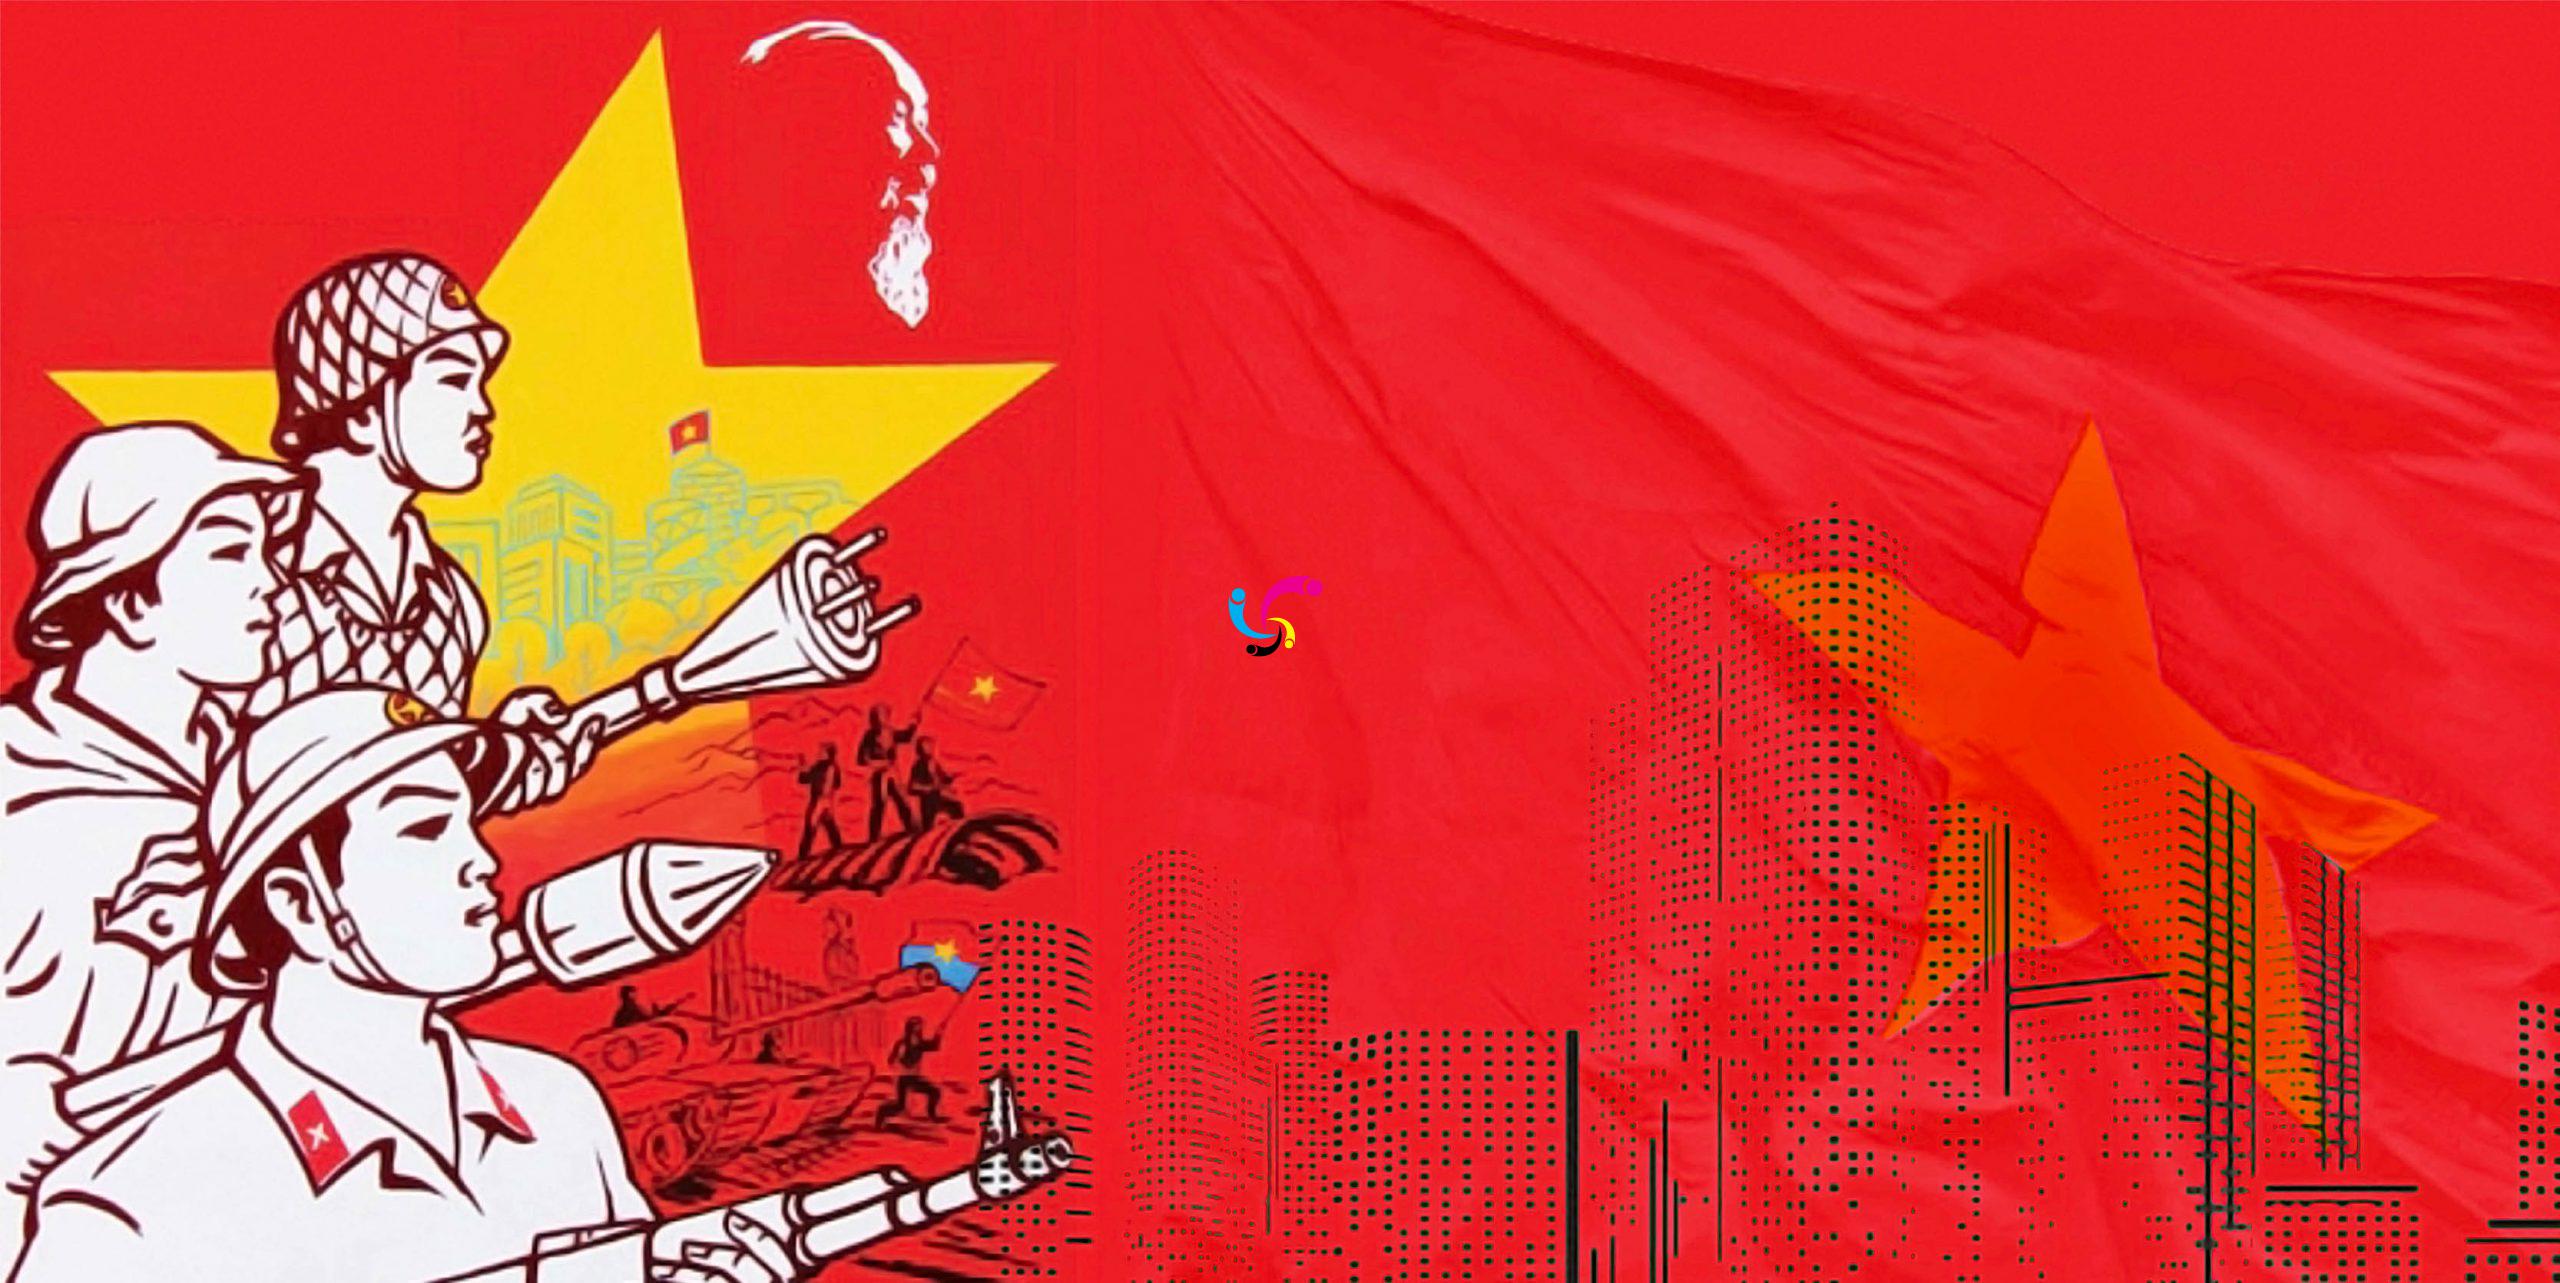 Ảnh nền cờ đỏ sao vàng luôn là biểu tượng đầy tự hào của dân tộc Việt Nam. Nhưng bạn có biết rằng còn có nhiều phiên bản tuyệt đẹp của nó không? Chúng tôi xin giới thiệu đến bạn bộ sưu tập ảnh nền cờ đỏ sao vàng độc đáo và mới nhất, mang đến sự tự hào và yêu nước cho tất cả mọi người.